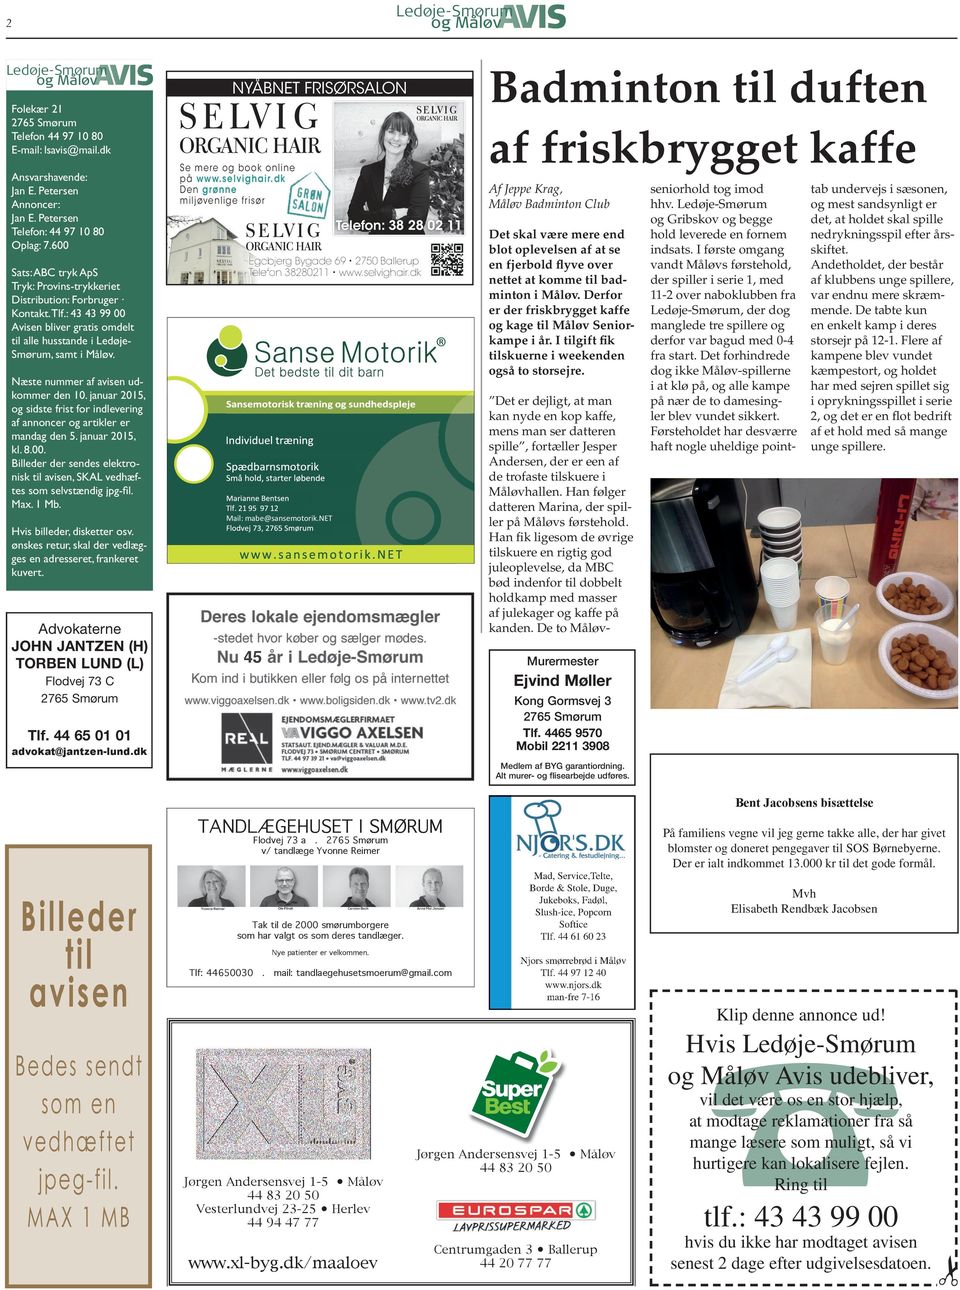 : 43 43 99 00 Avisen bliver gratis omdelt til alle husstande i LedøjeSmørum, samt i Måløv. Se mere og book online på www.selvighair.